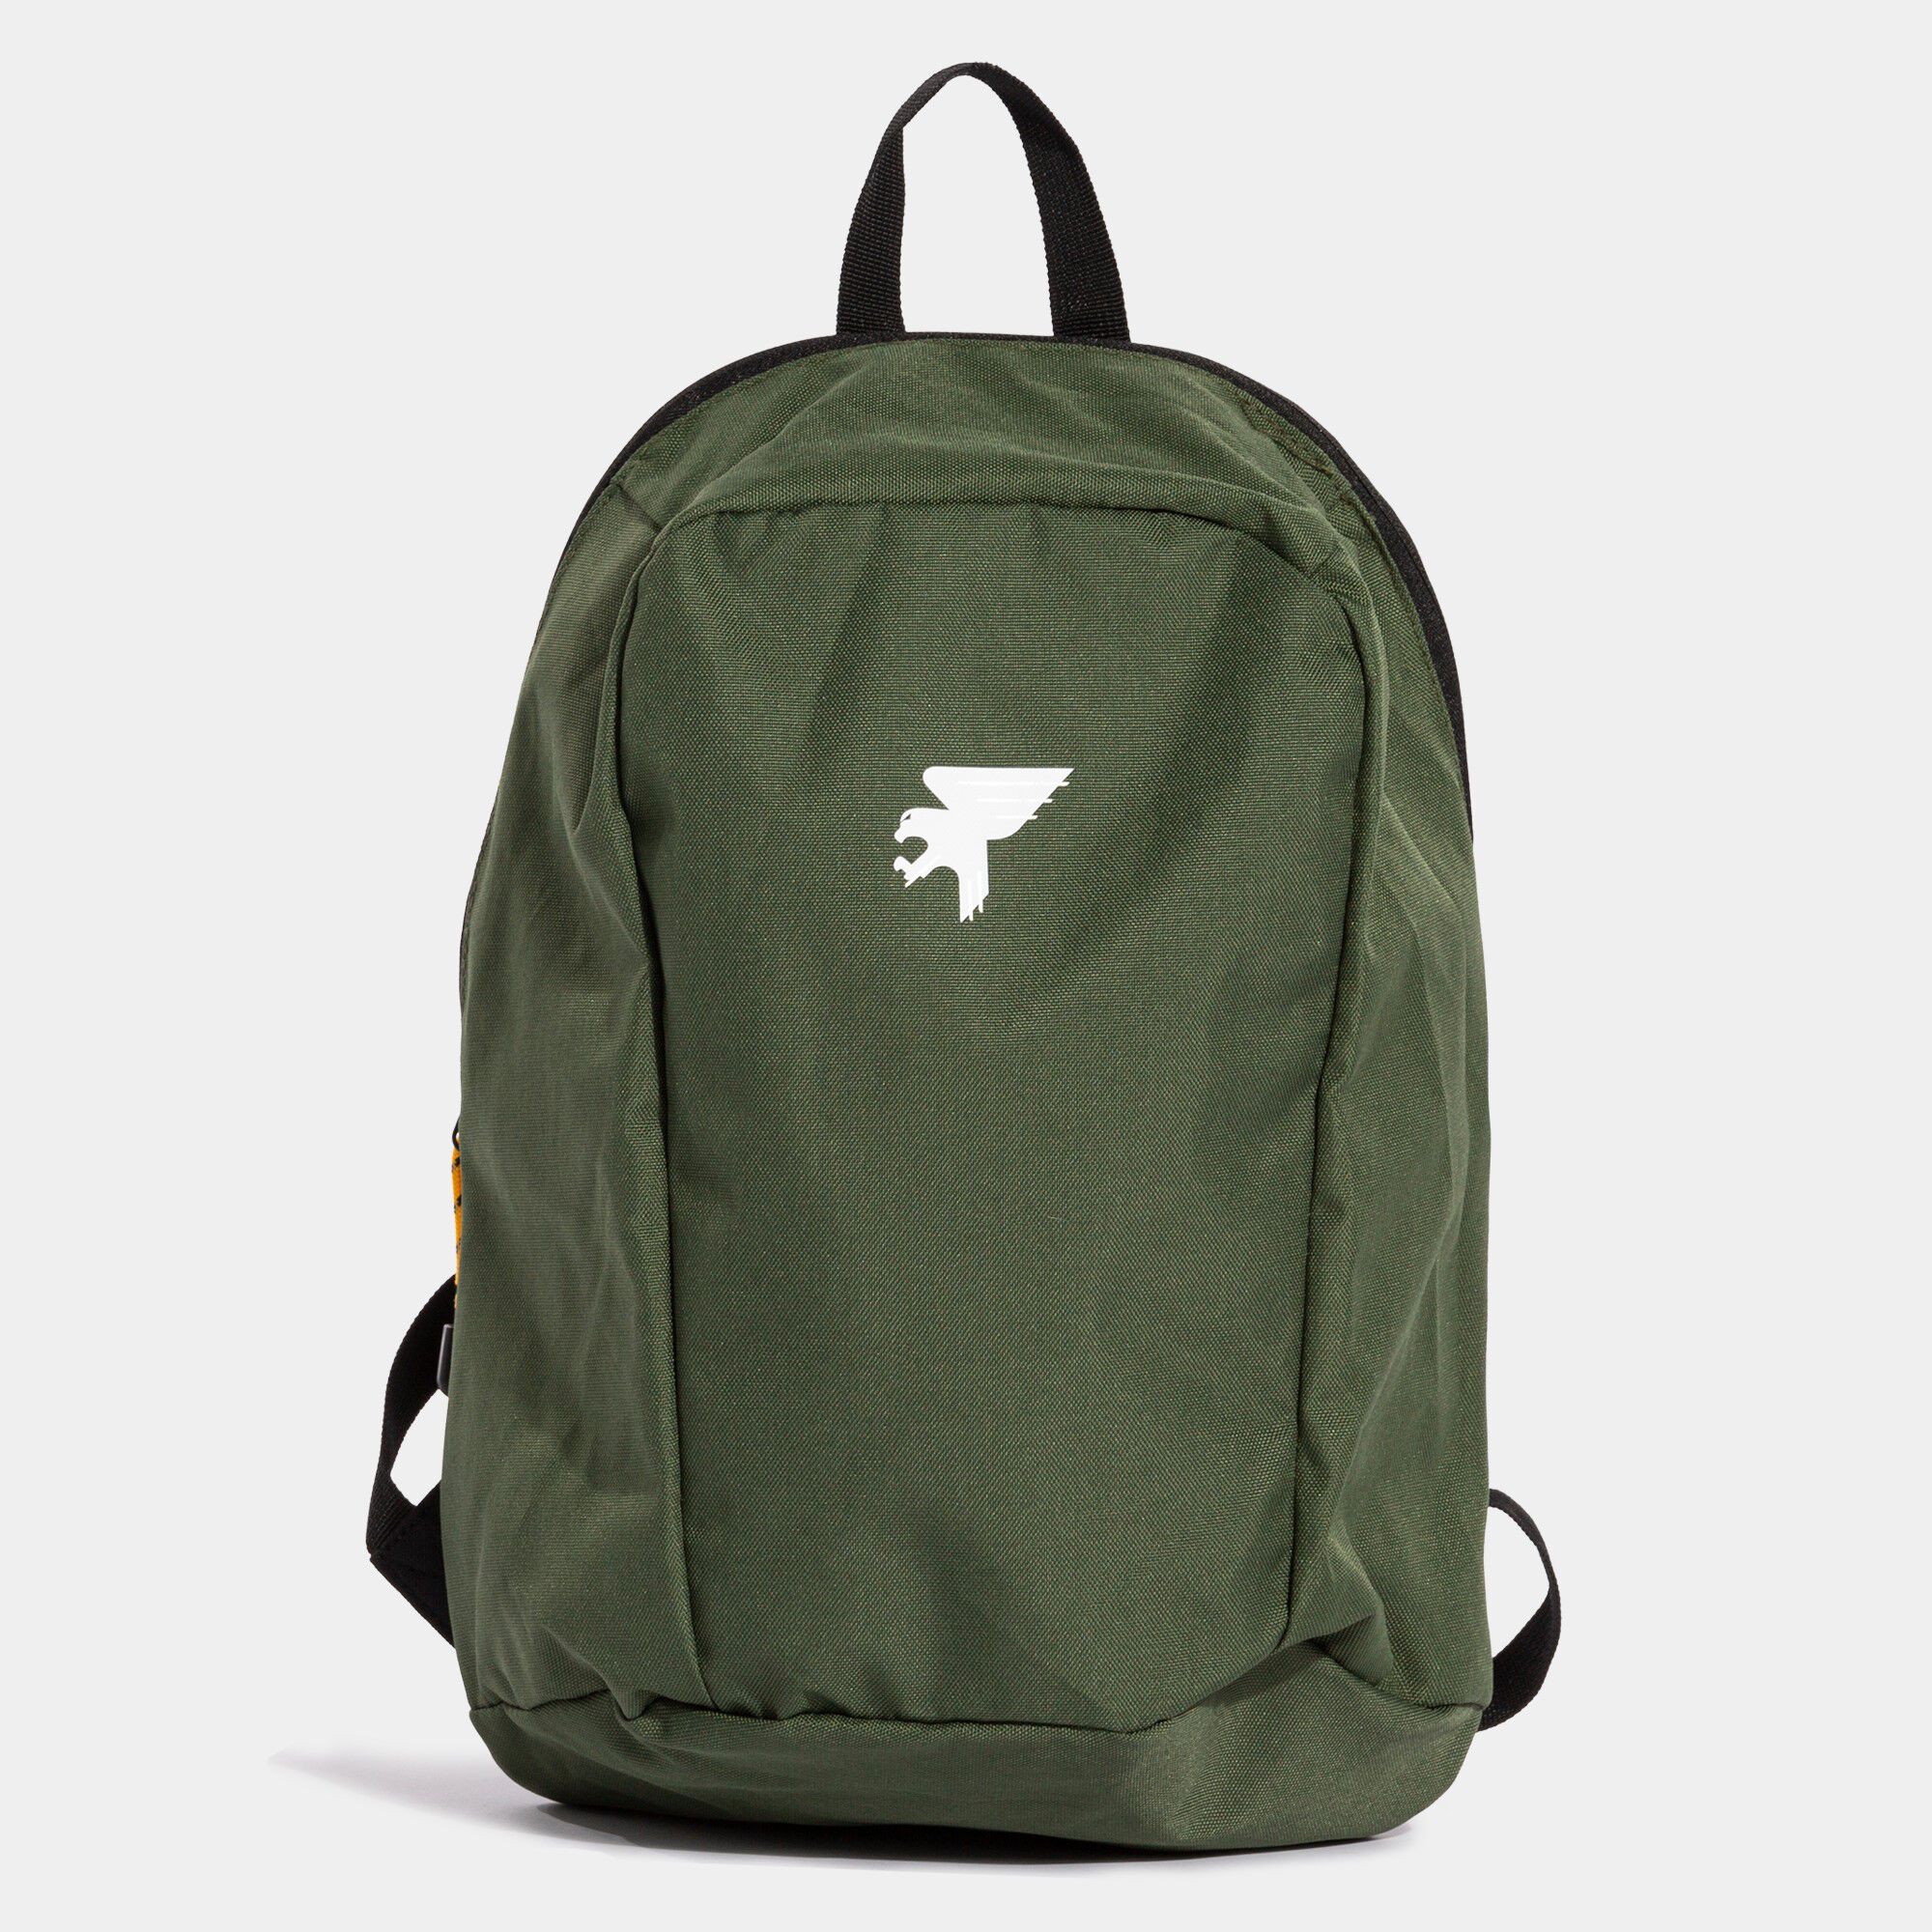 Backpack - shoe bag Explorer khaki